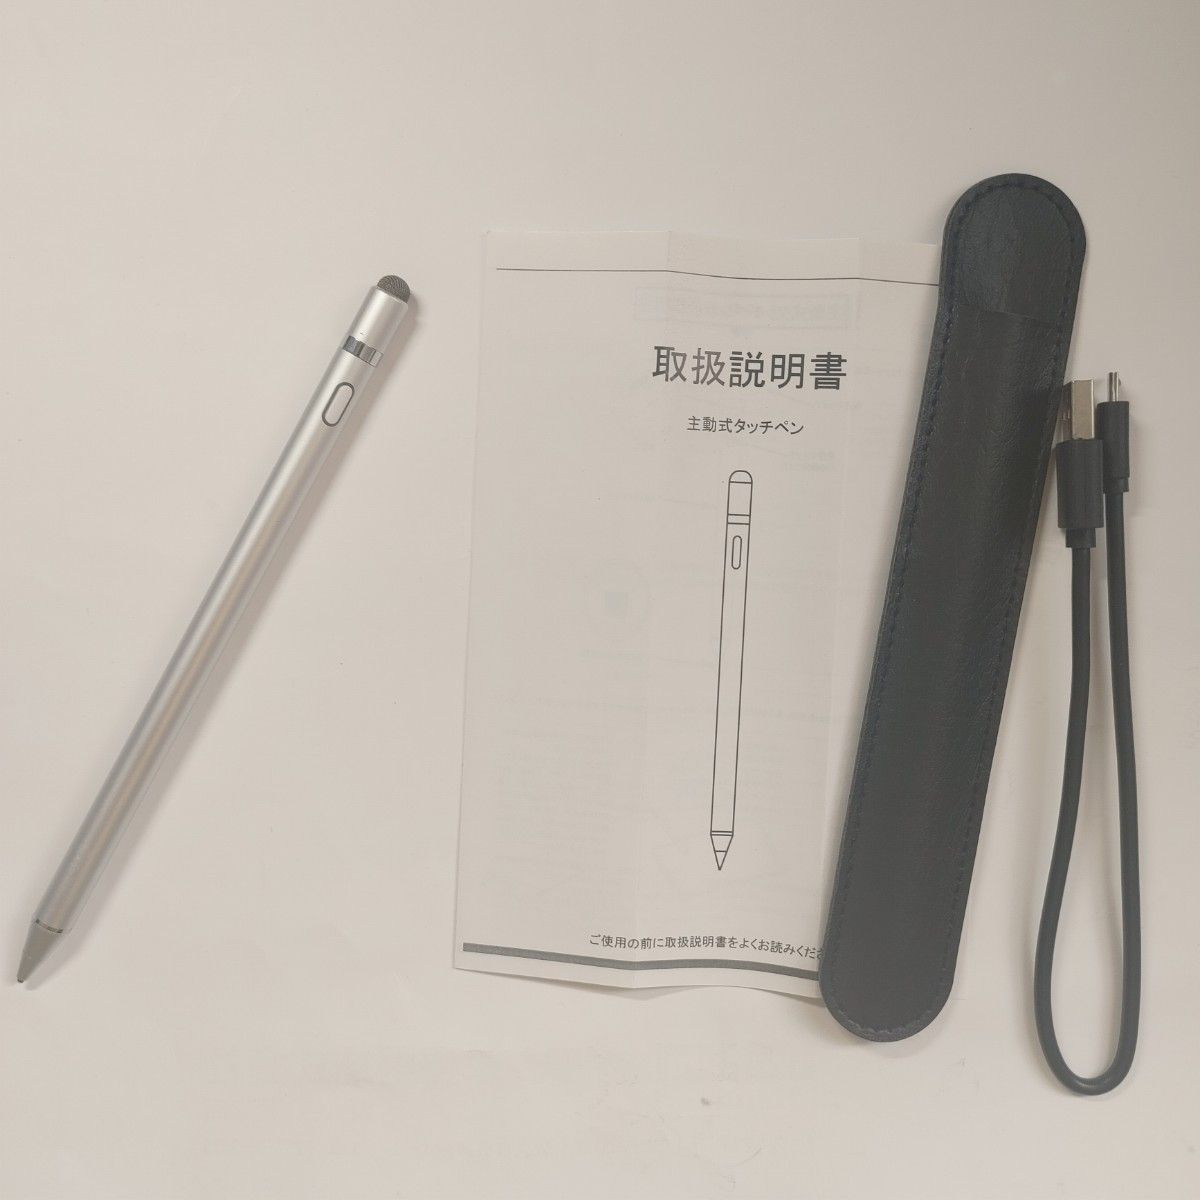 【デジタルペイントに】充電式 タッチペン スマートフォン タブレット 対応 シルバー 充電式 極細 USB スタイラスペン 快適